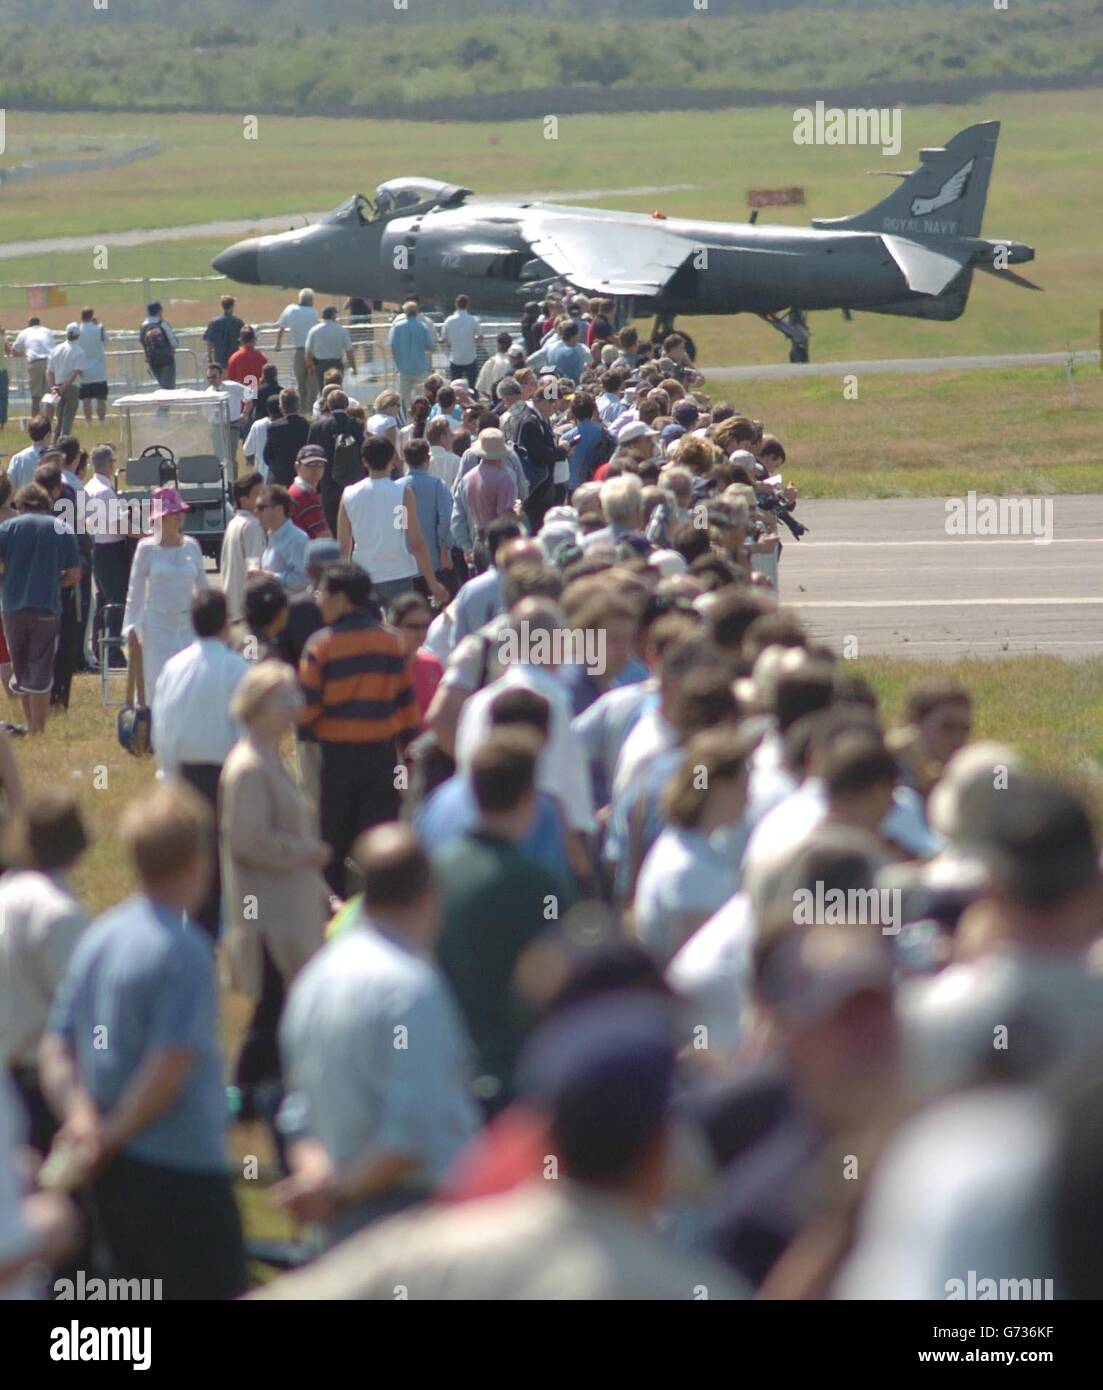 Un Harrier de la mer traverse des spectateurs après son exposition à l'Airshow de Farnborough.Environ 300,000 visiteurs étaient attendus au cours de la foire internationale, qui se termine dimanche. Banque D'Images